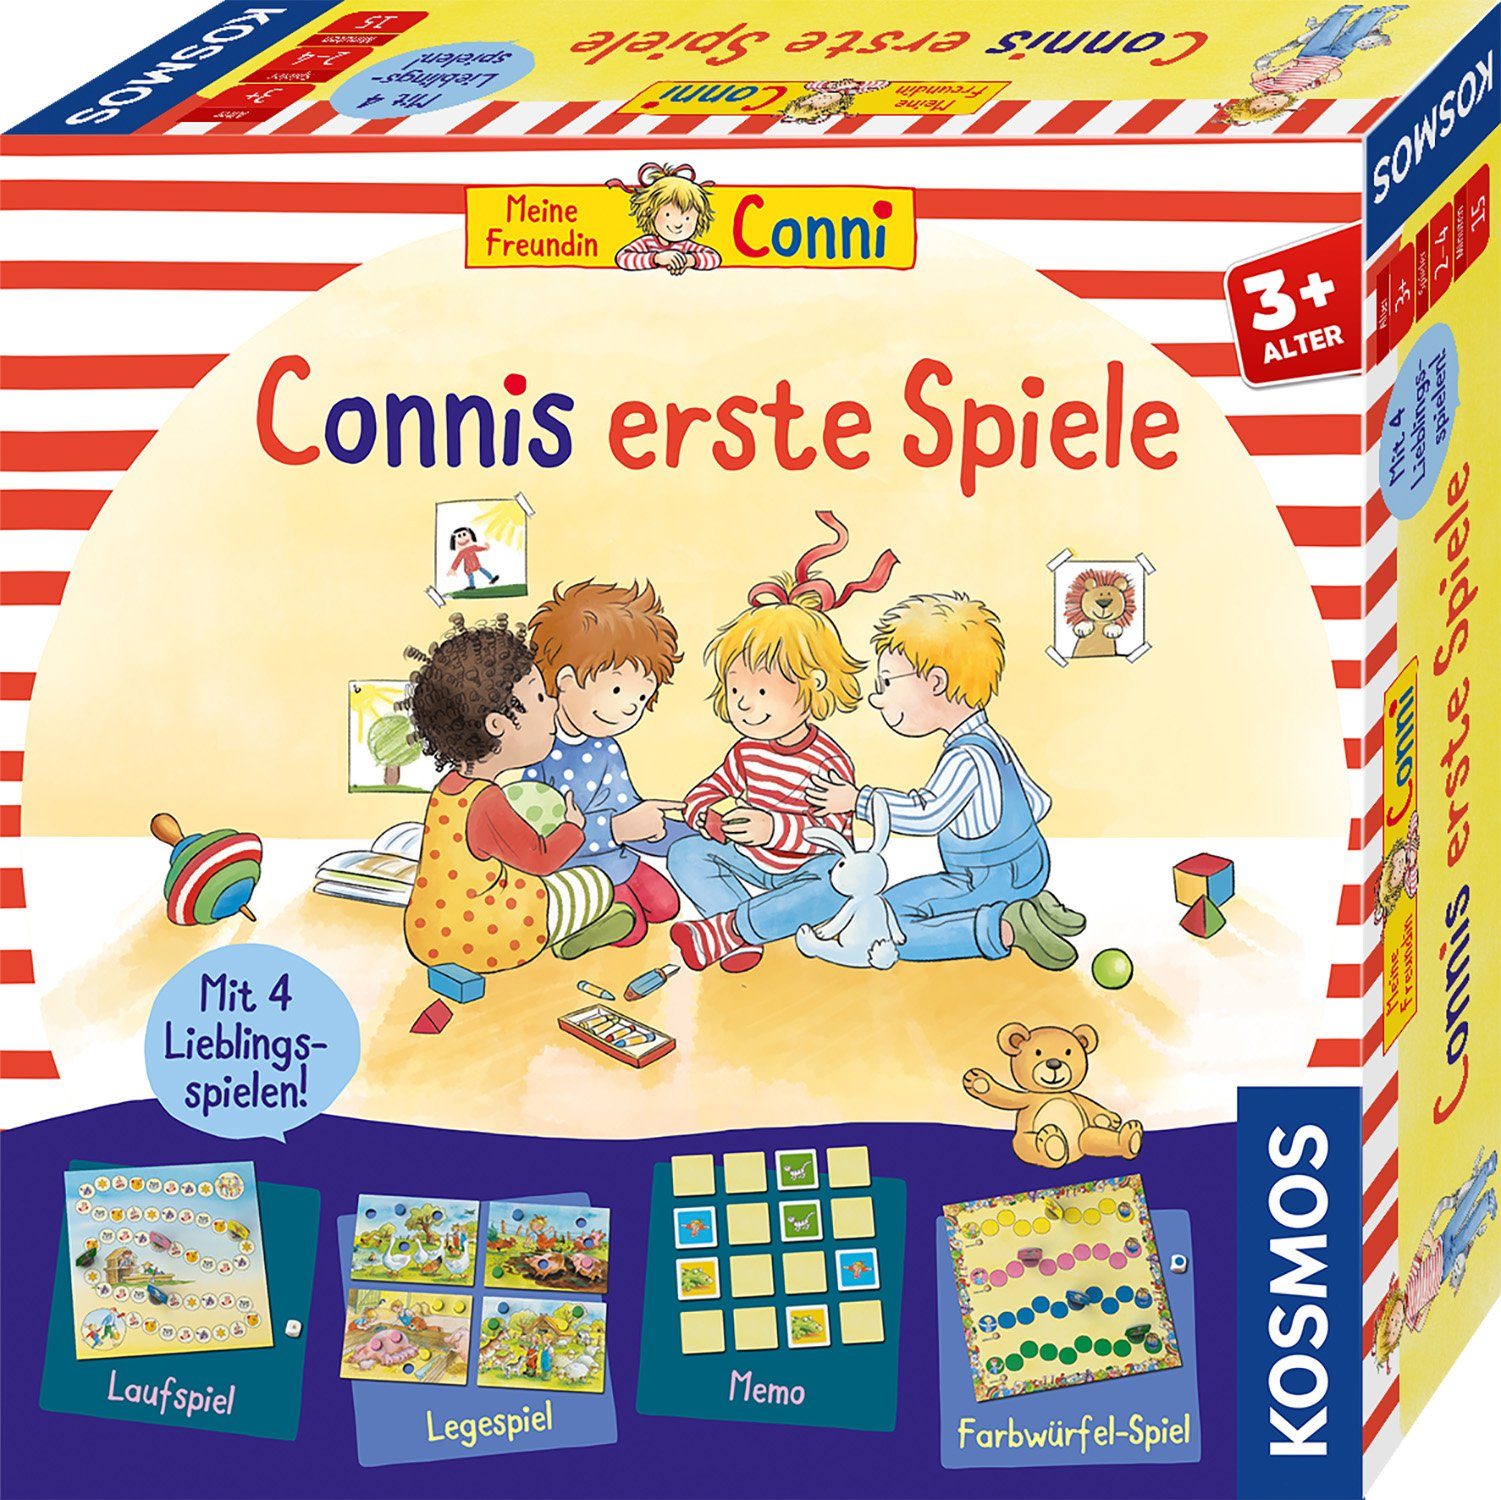 Germany Spielesammlung, erste Connis Spiele, Kosmos in Made Kinderspiel